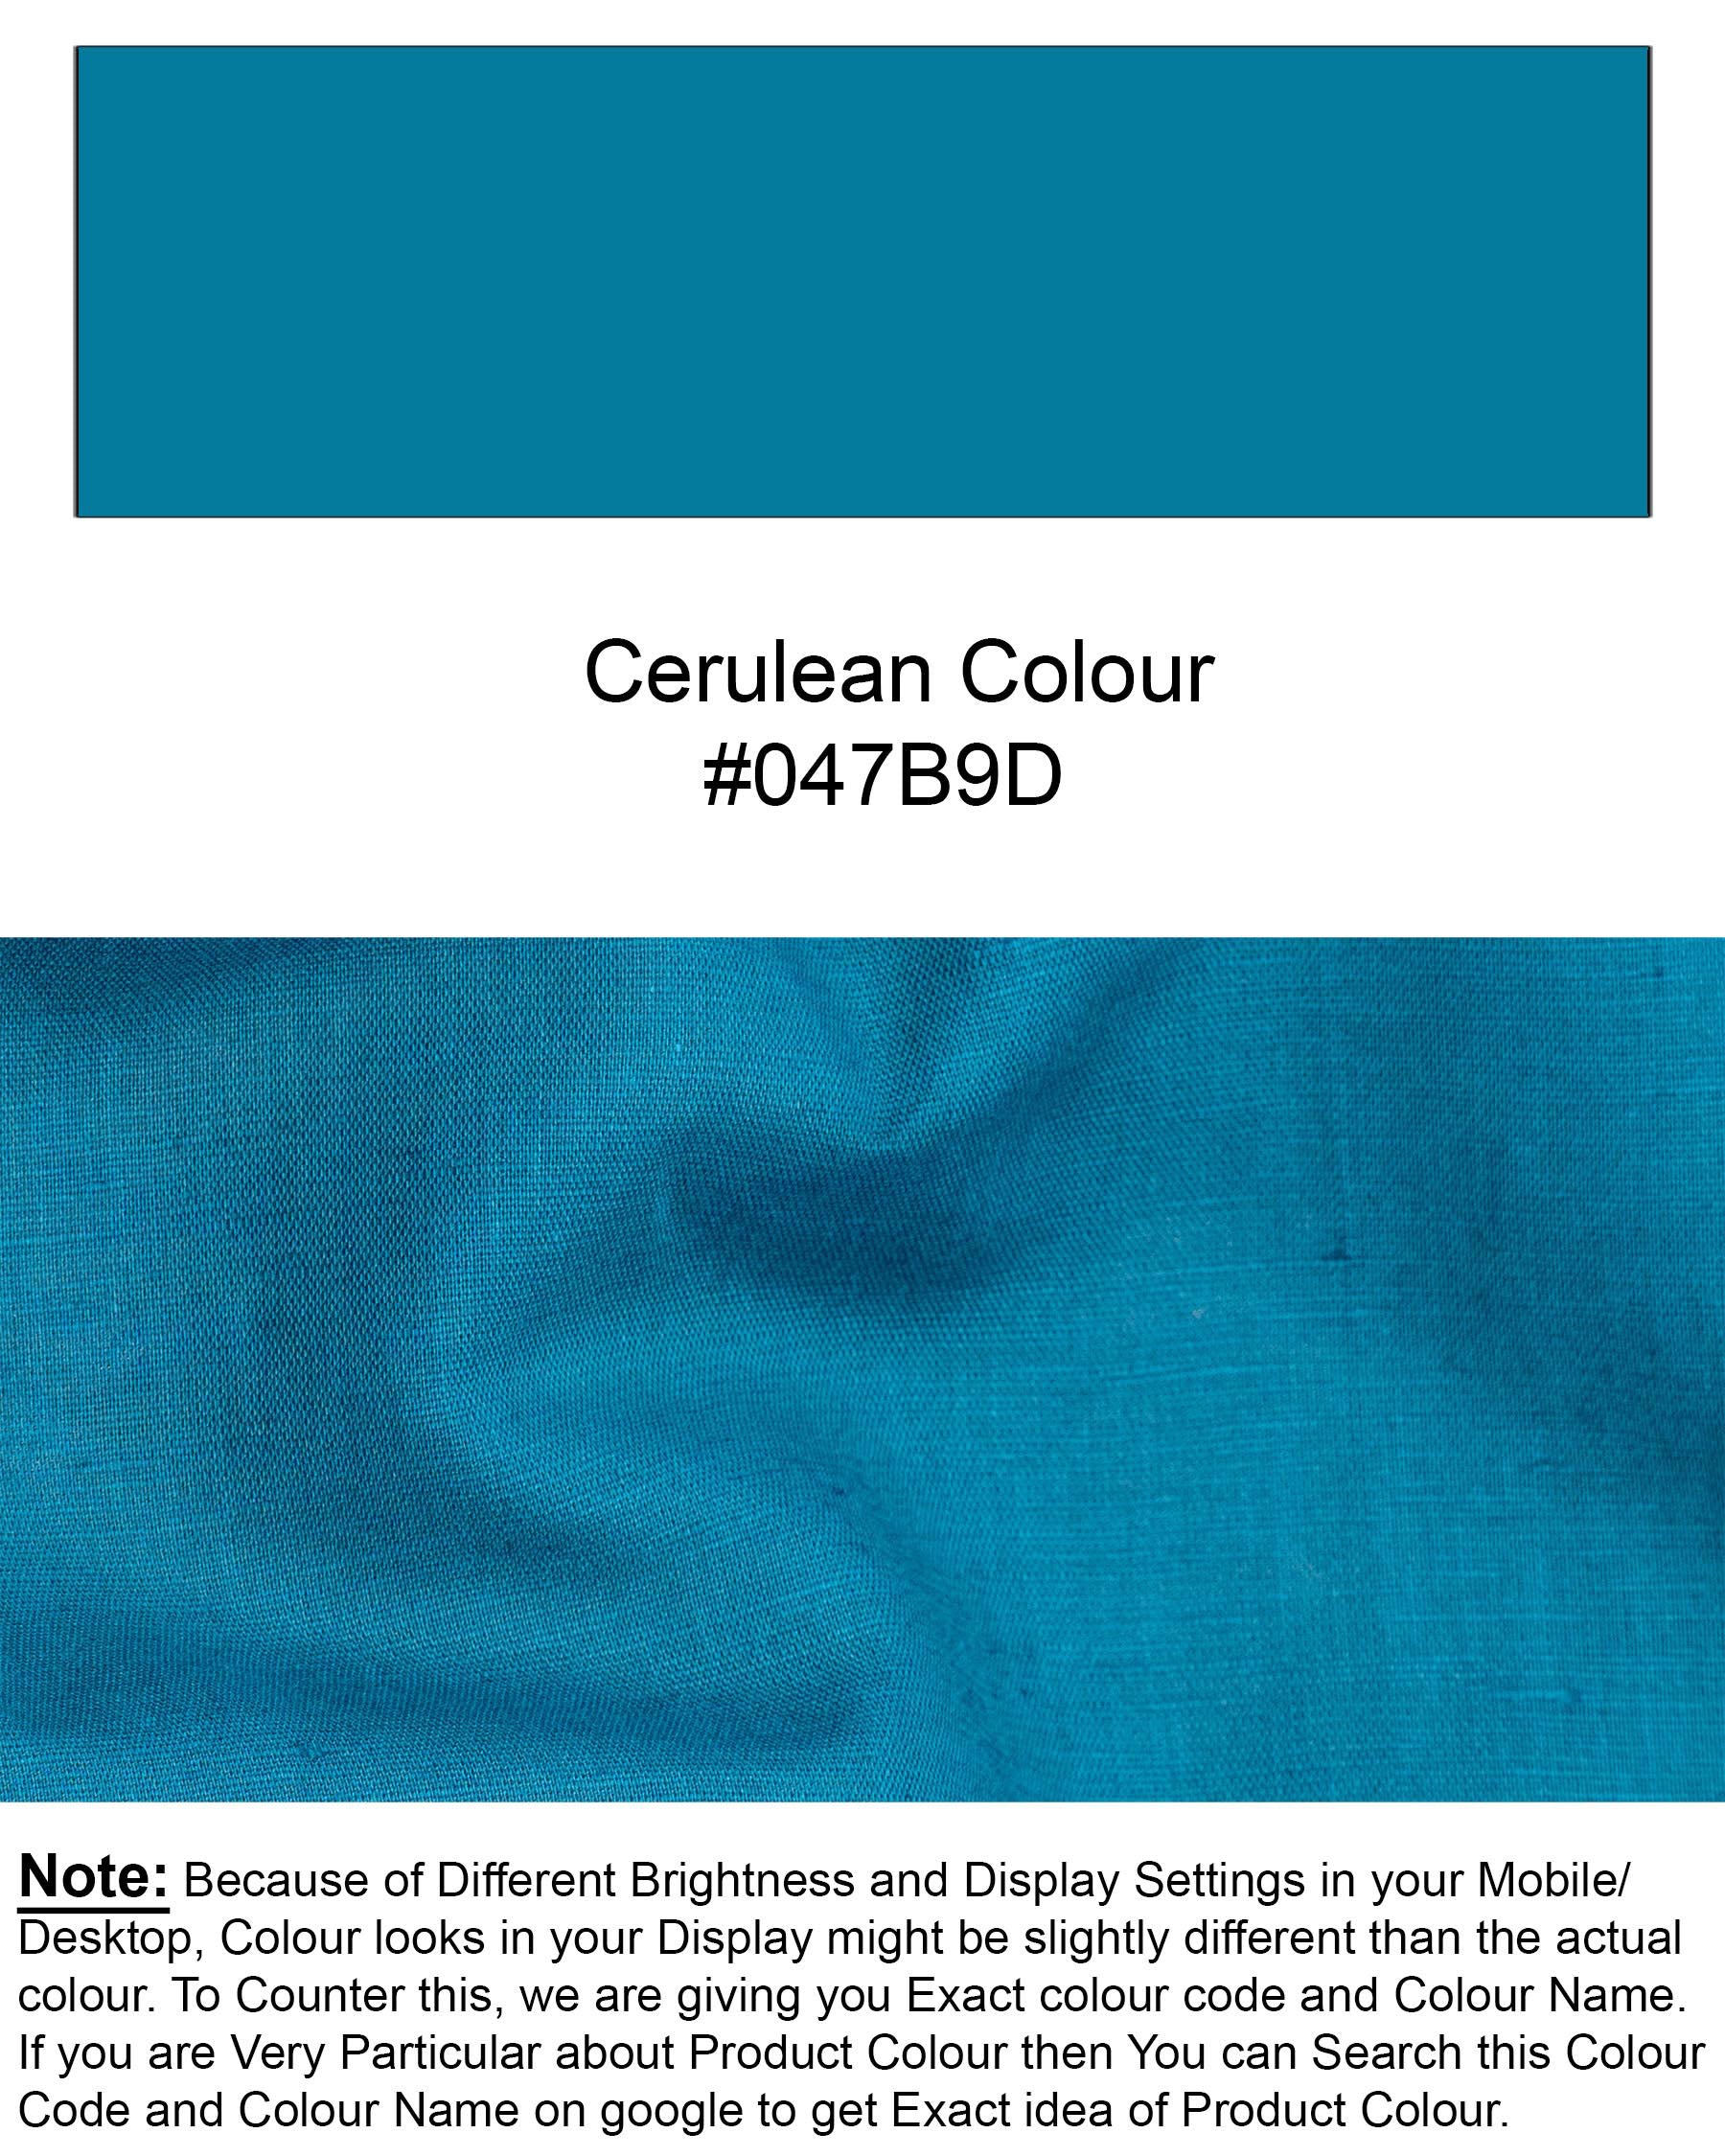 Cerulean Blue Luxurious Linen Shirt 6783-BD-BLK-38, 6783-BD-BLK-H-38, 6783-BD-BLK-39, 6783-BD-BLK-H-39, 6783-BD-BLK-40, 6783-BD-BLK-H-40, 6783-BD-BLK-42, 6783-BD-BLK-H-42, 6783-BD-BLK-44, 6783-BD-BLK-H-44, 6783-BD-BLK-46, 6783-BD-BLK-H-46, 6783-BD-BLK-48, 6783-BD-BLK-H-48, 6783-BD-BLK-50, 6783-BD-BLK-H-50, 6783-BD-BLK-52, 6783-BD-BLK-H-52